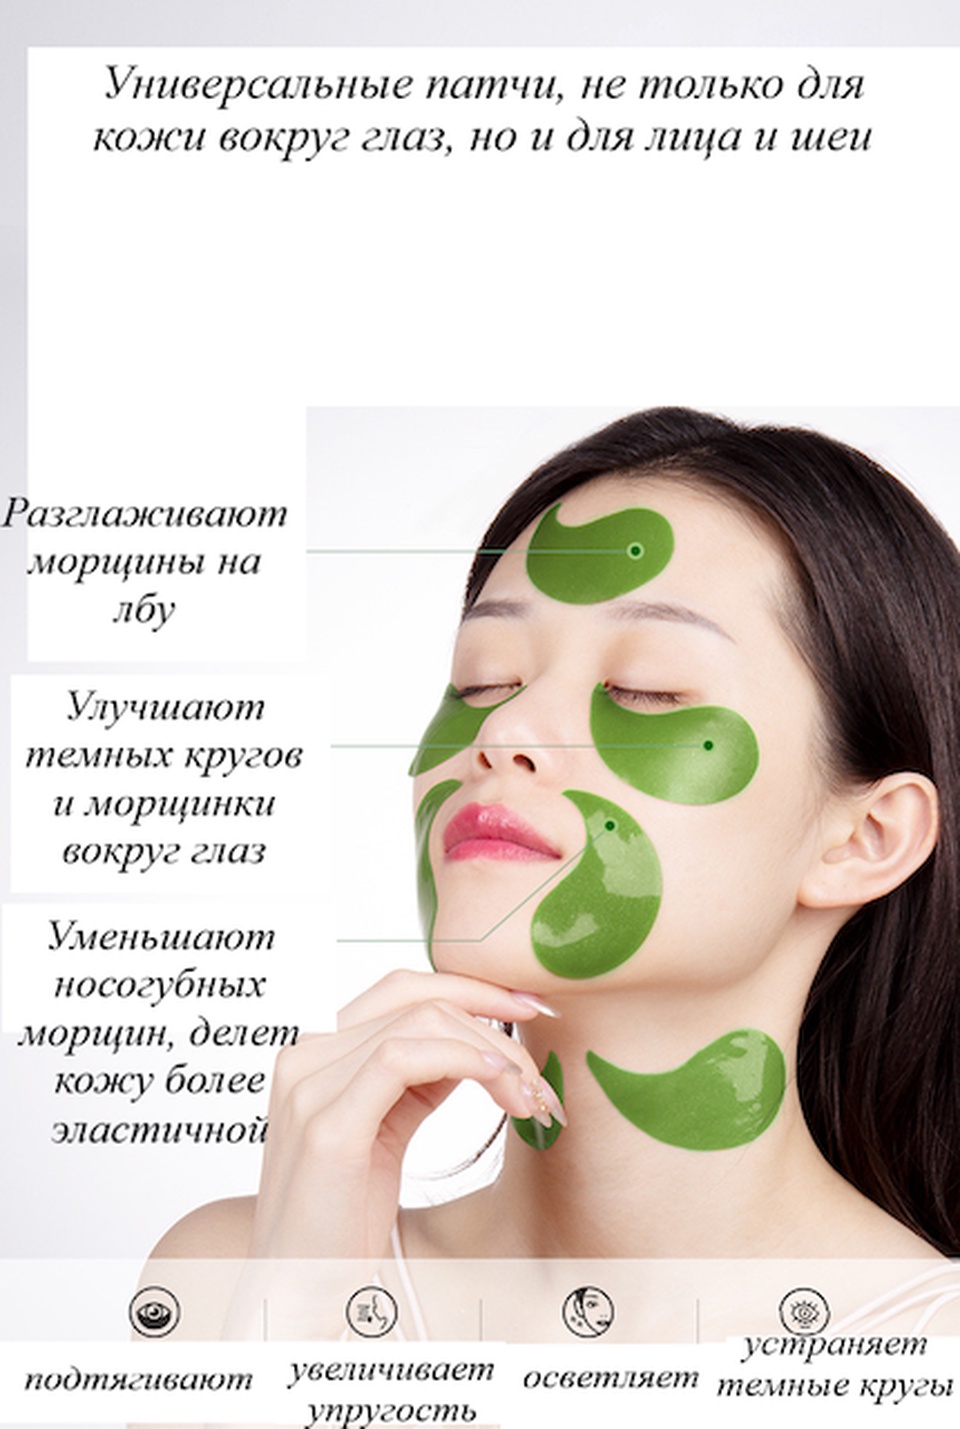 Гидрогелевые патчи с экстрактом авокадо и маслом ши - 250 ₽, заказать онлайн.